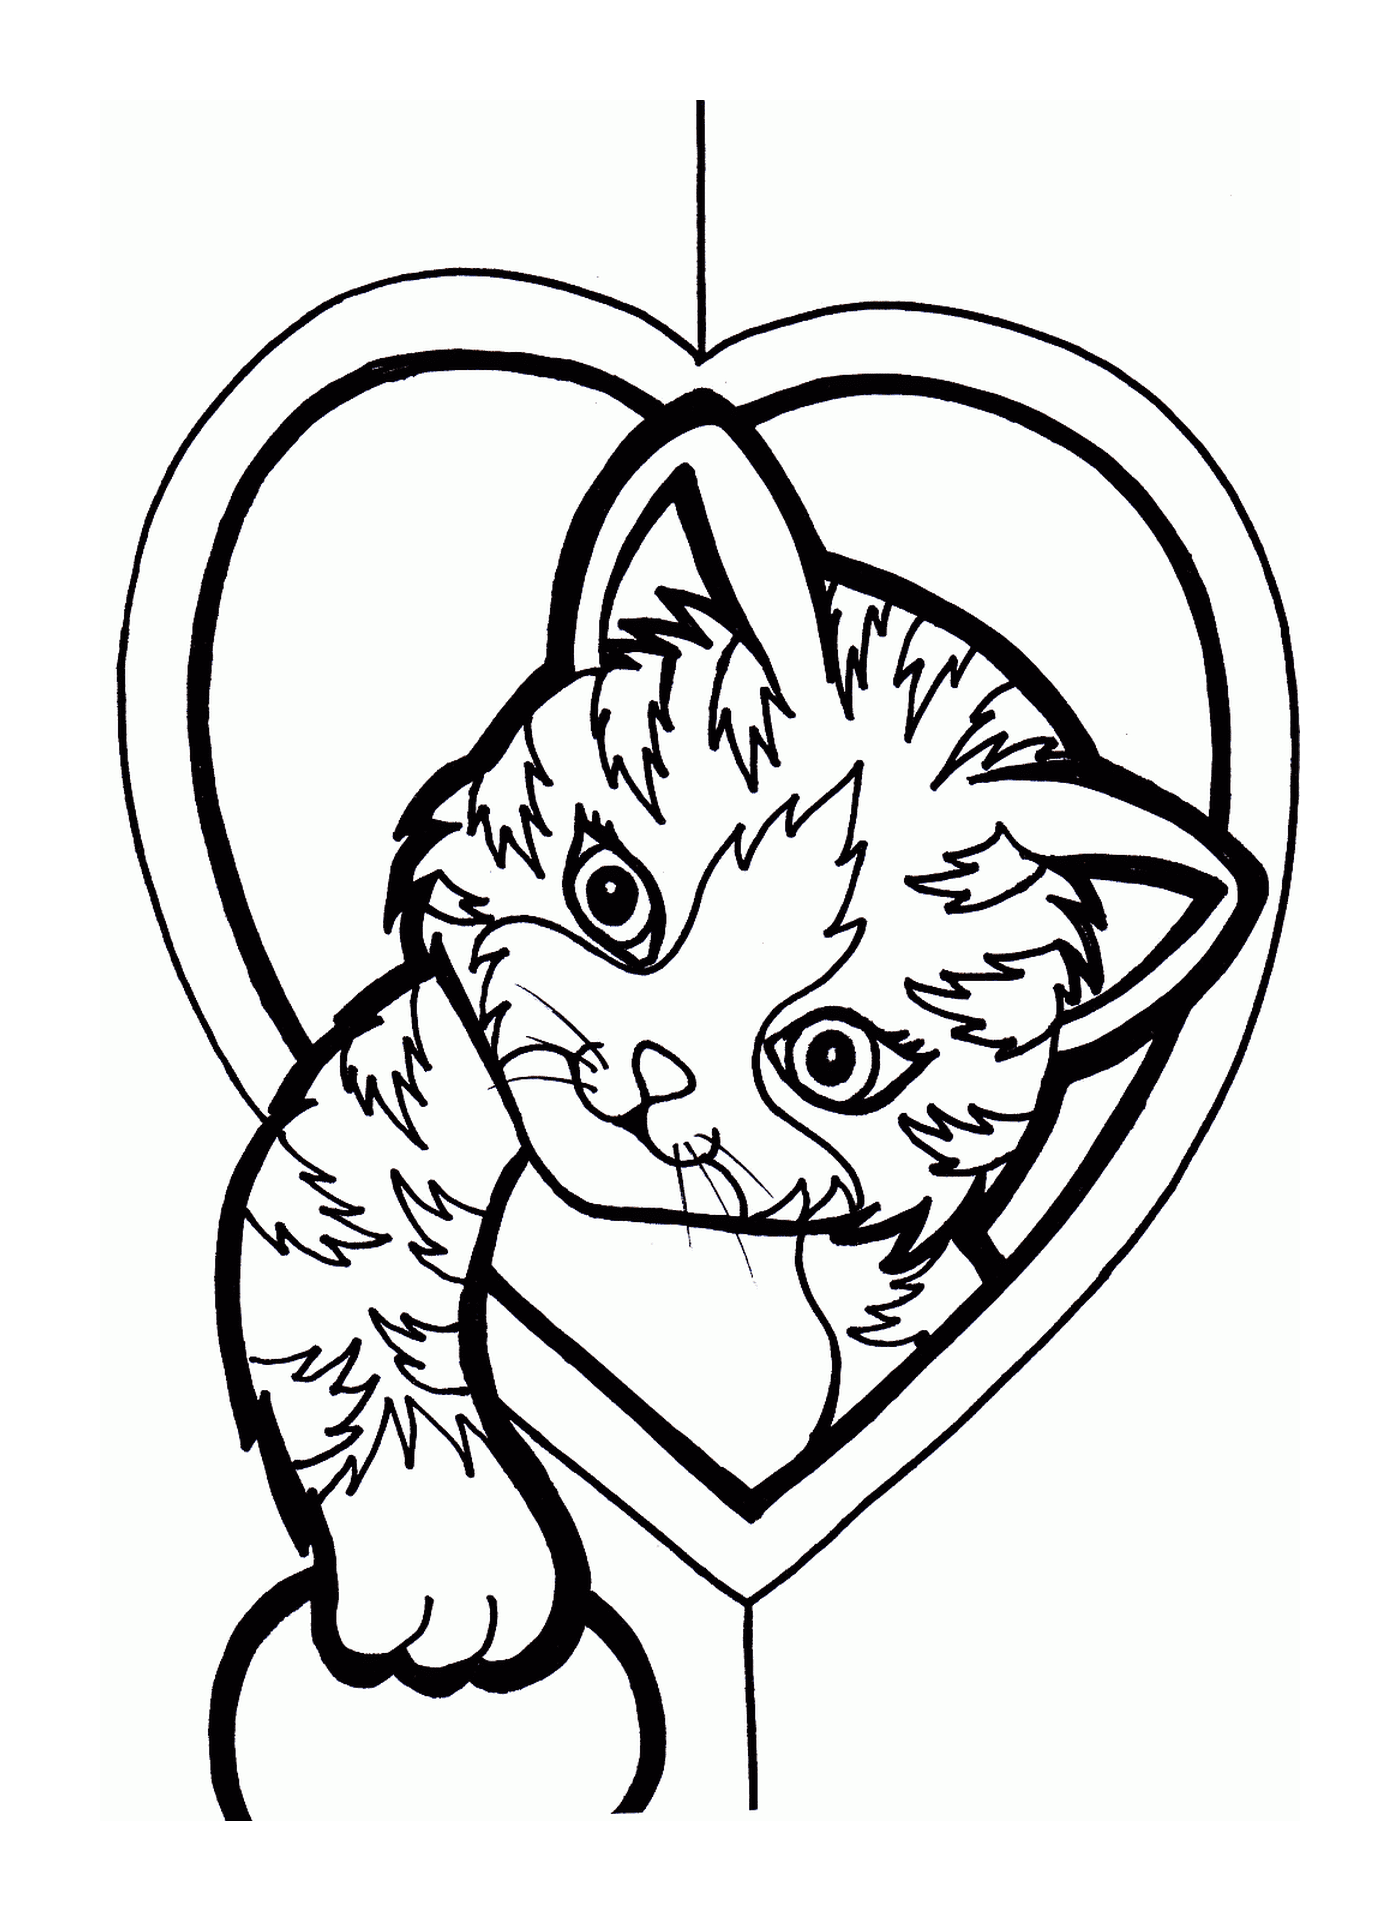  A cat in a heart 